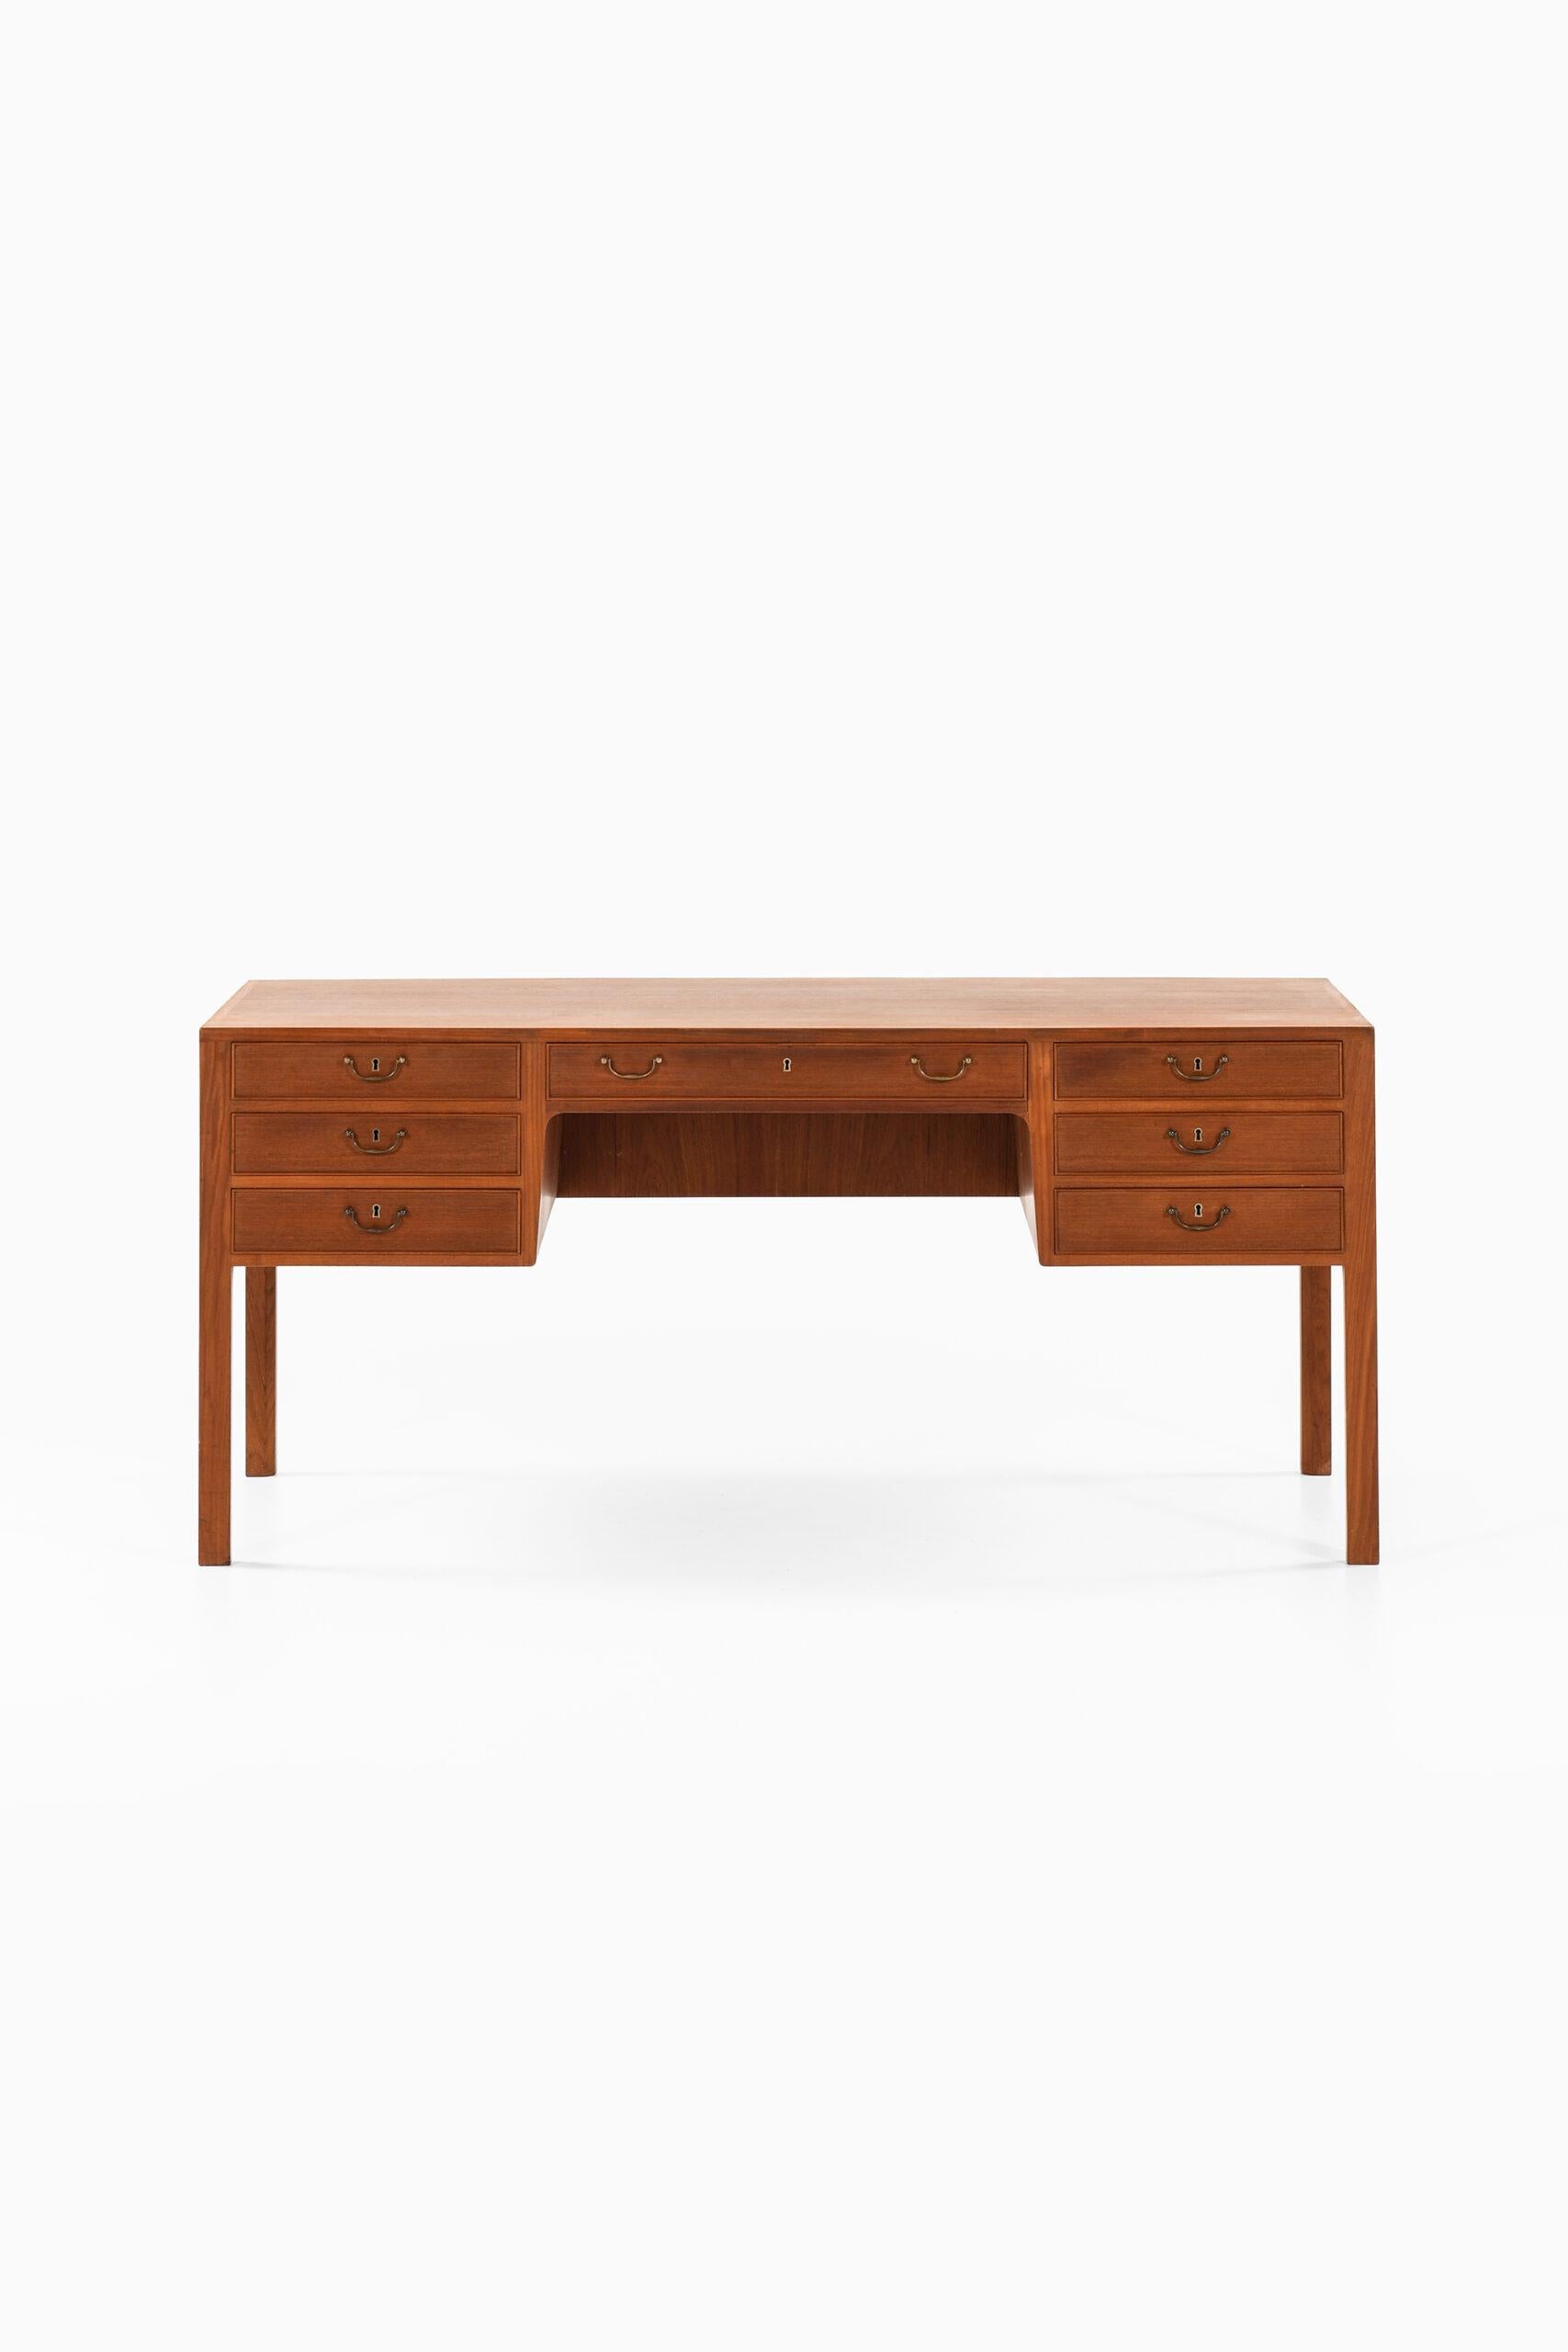 Ole Wanscher Desk Produced by Cabinetmaker A.J. Iversen in Denmark 4